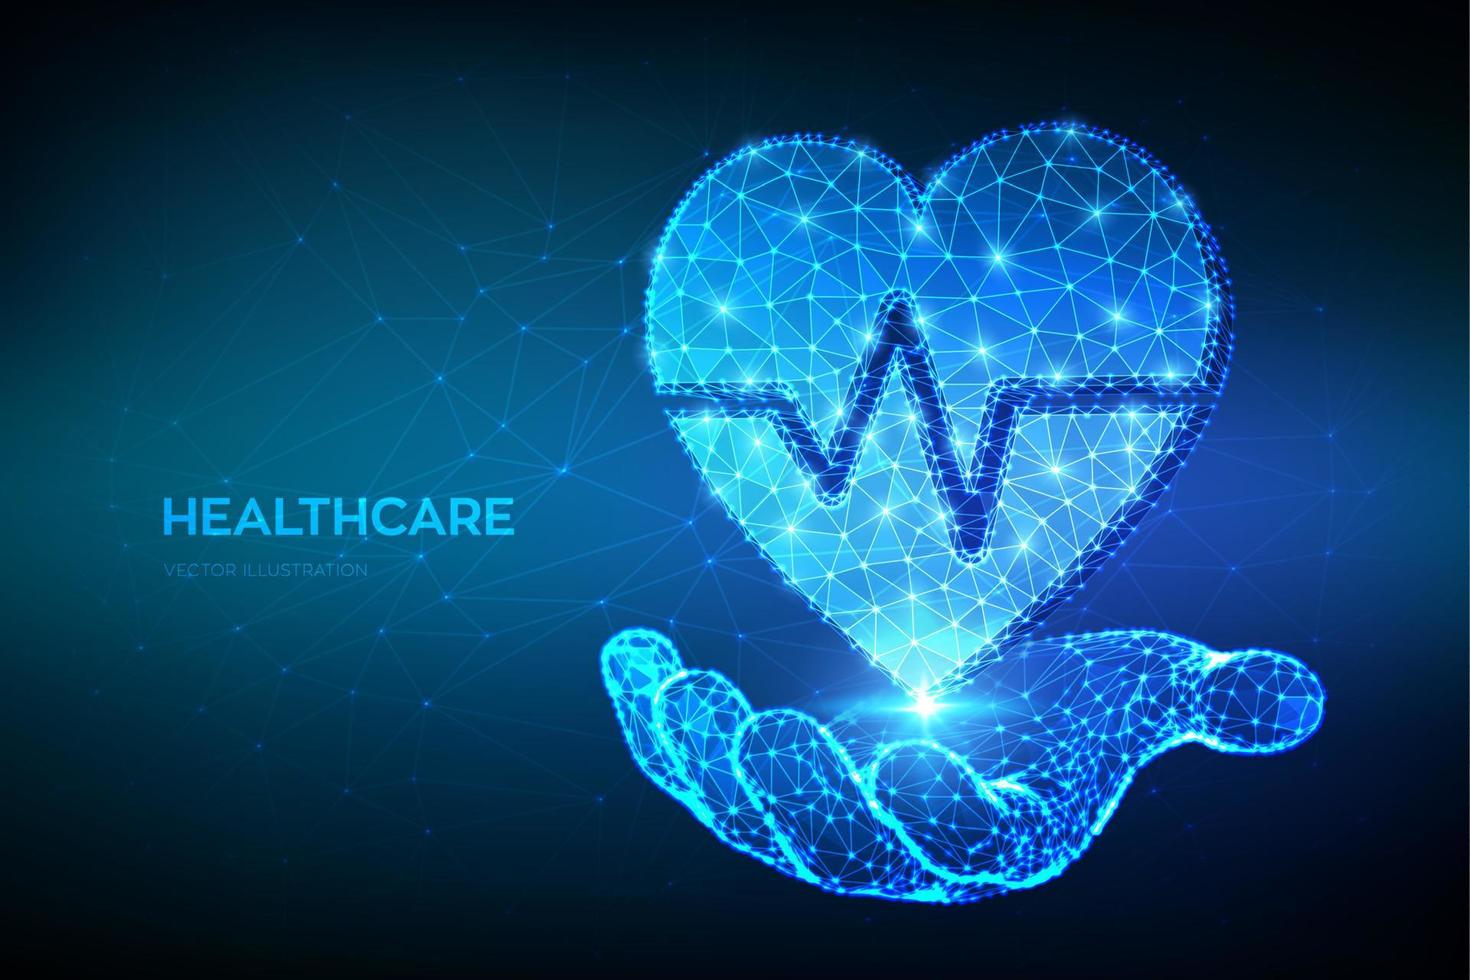 hälsovård, medicin och kardiologi koncept. hjärta ikon med hjärtslag linje i handen. abstrakt lågt månghörnigt hjärta med EKG-linje - symbol för sjukvård, akuttjänst. vektor illustration.